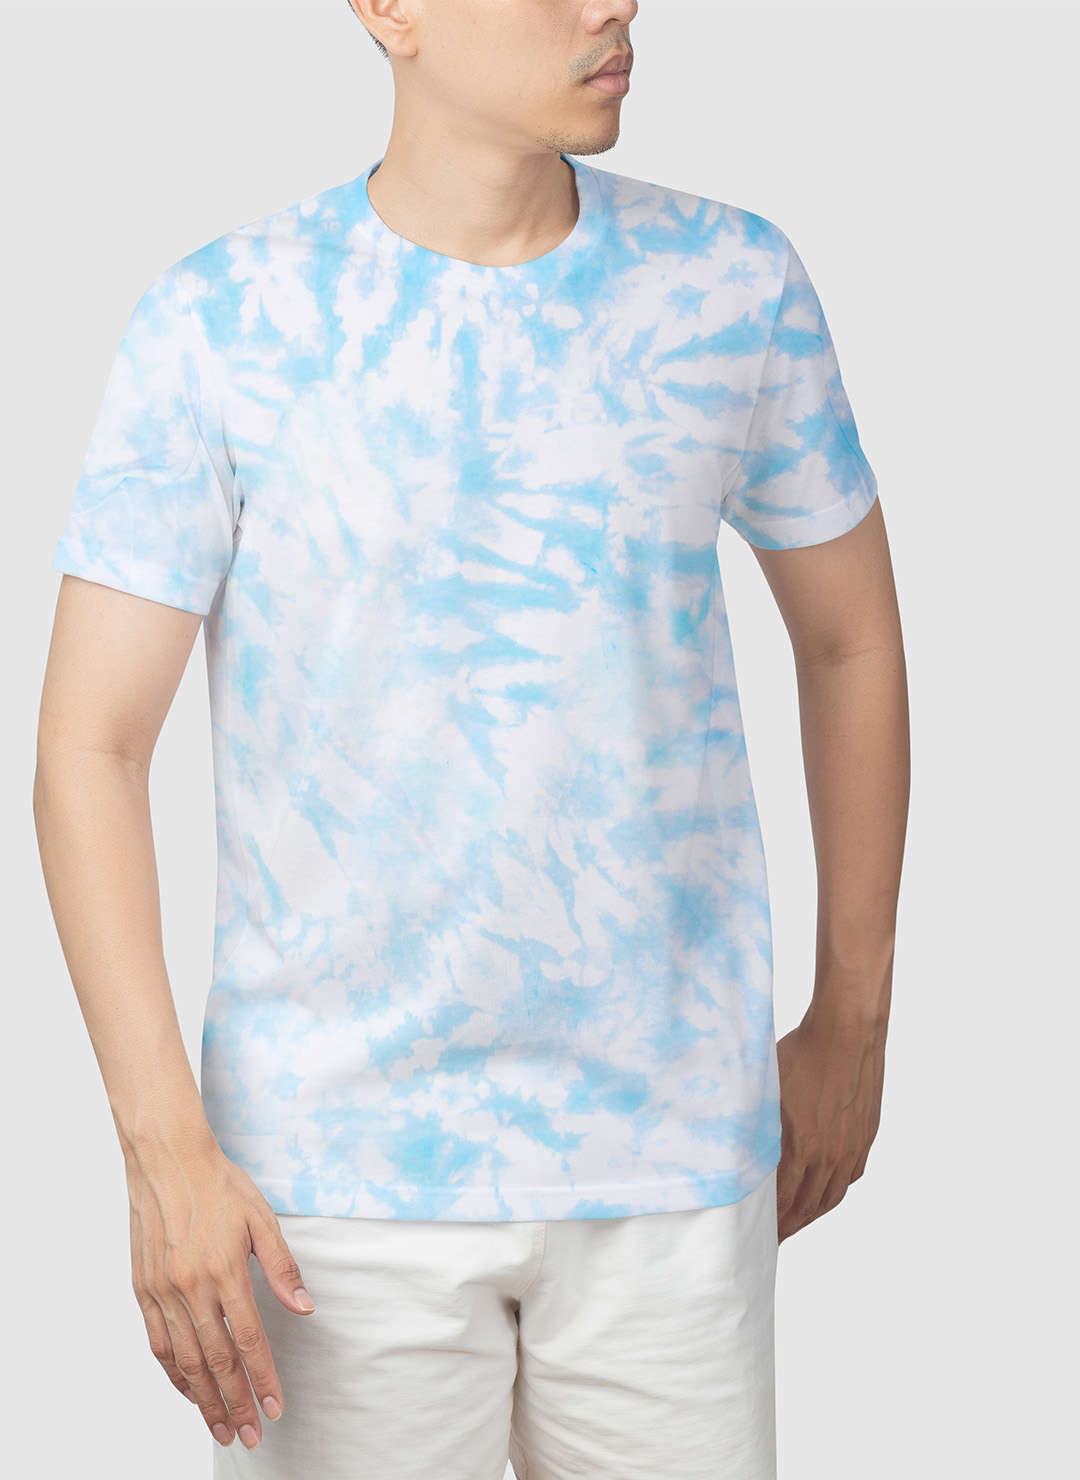 Buy Tie Dye T-shirts Online In India, Shop Tie Dye Hoodies